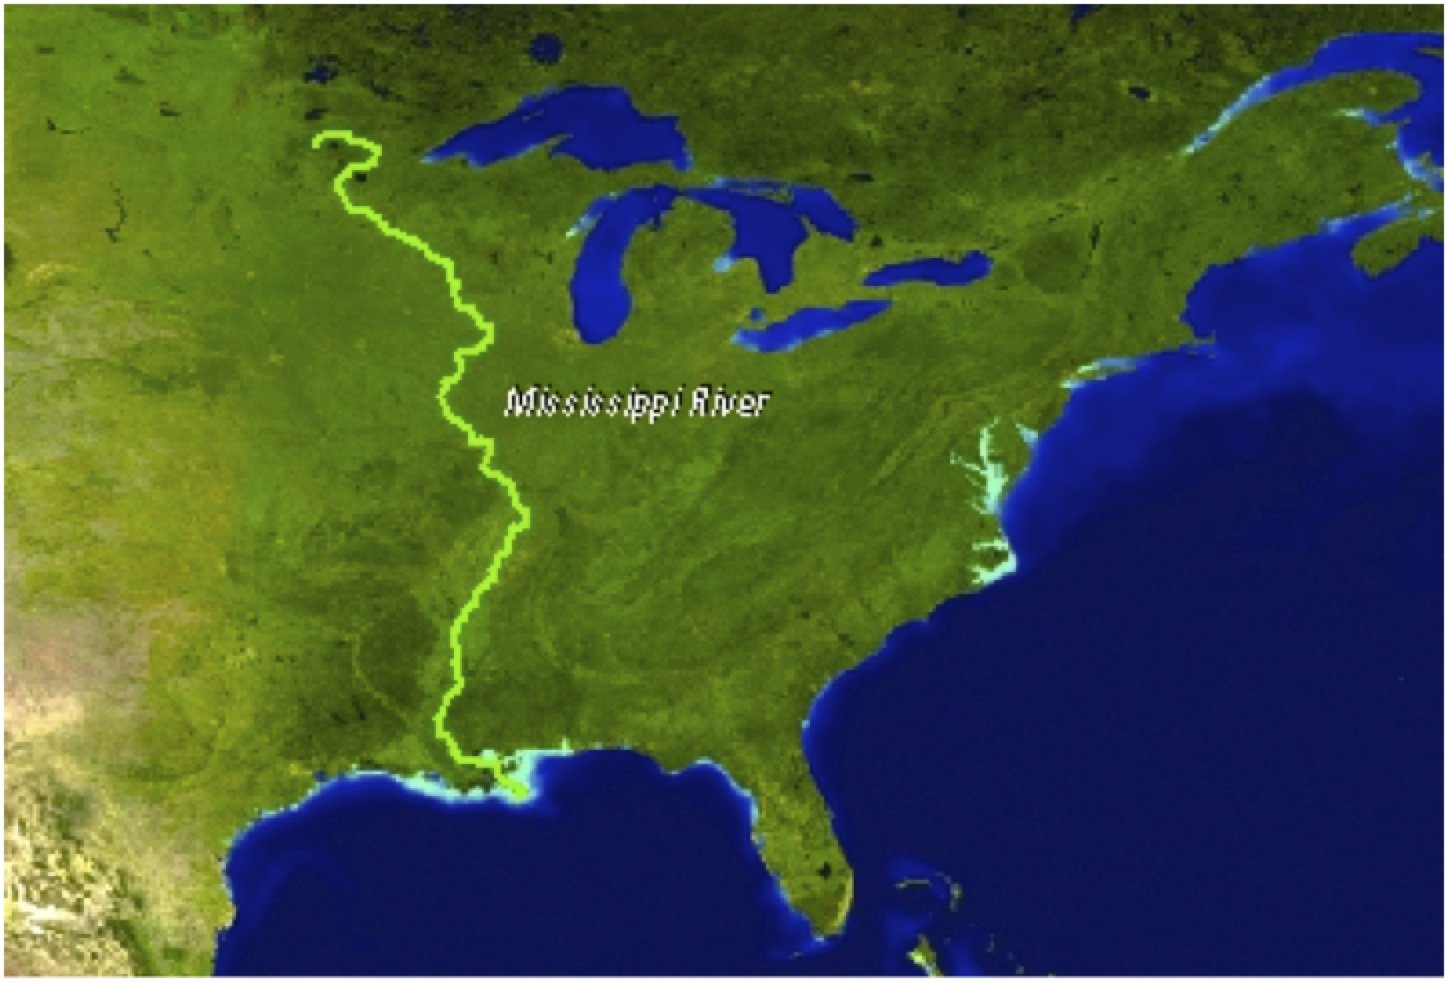 Какая река является правым притоком миссисипи. Река Миссисипи на карте. Исток реки Миссисипи. Северная Америка река Миссисипи. Исток реки Миссисипи в Северной Америке.